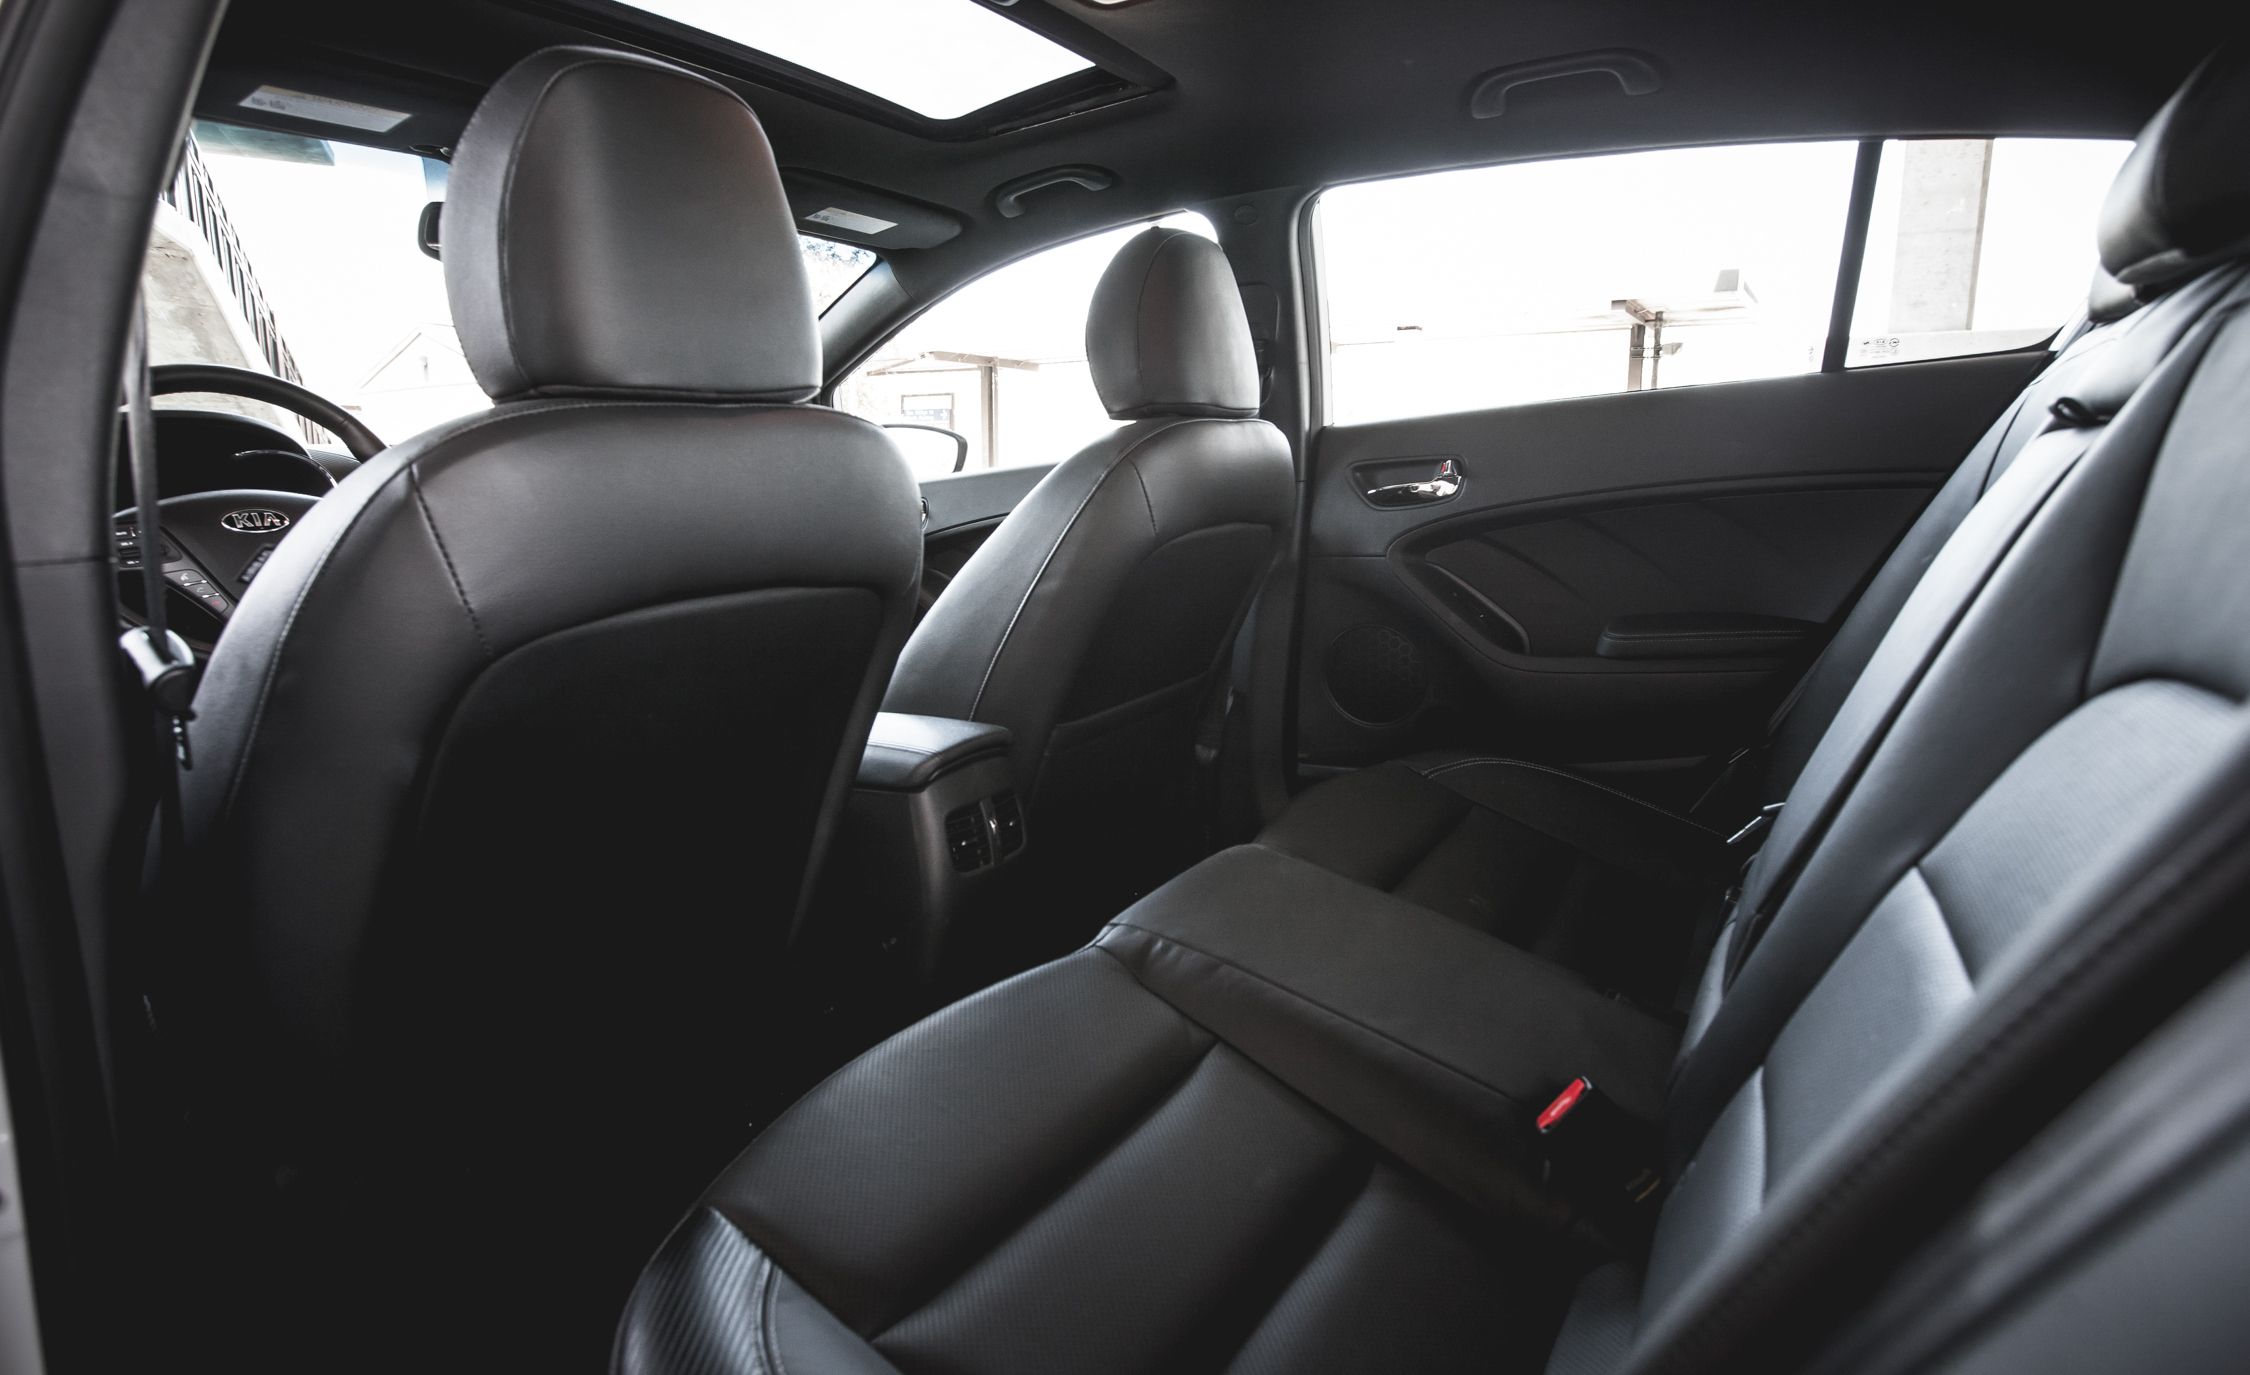 2014 Kia Forte5 Sx Turbo Interior (View 12 of 26)